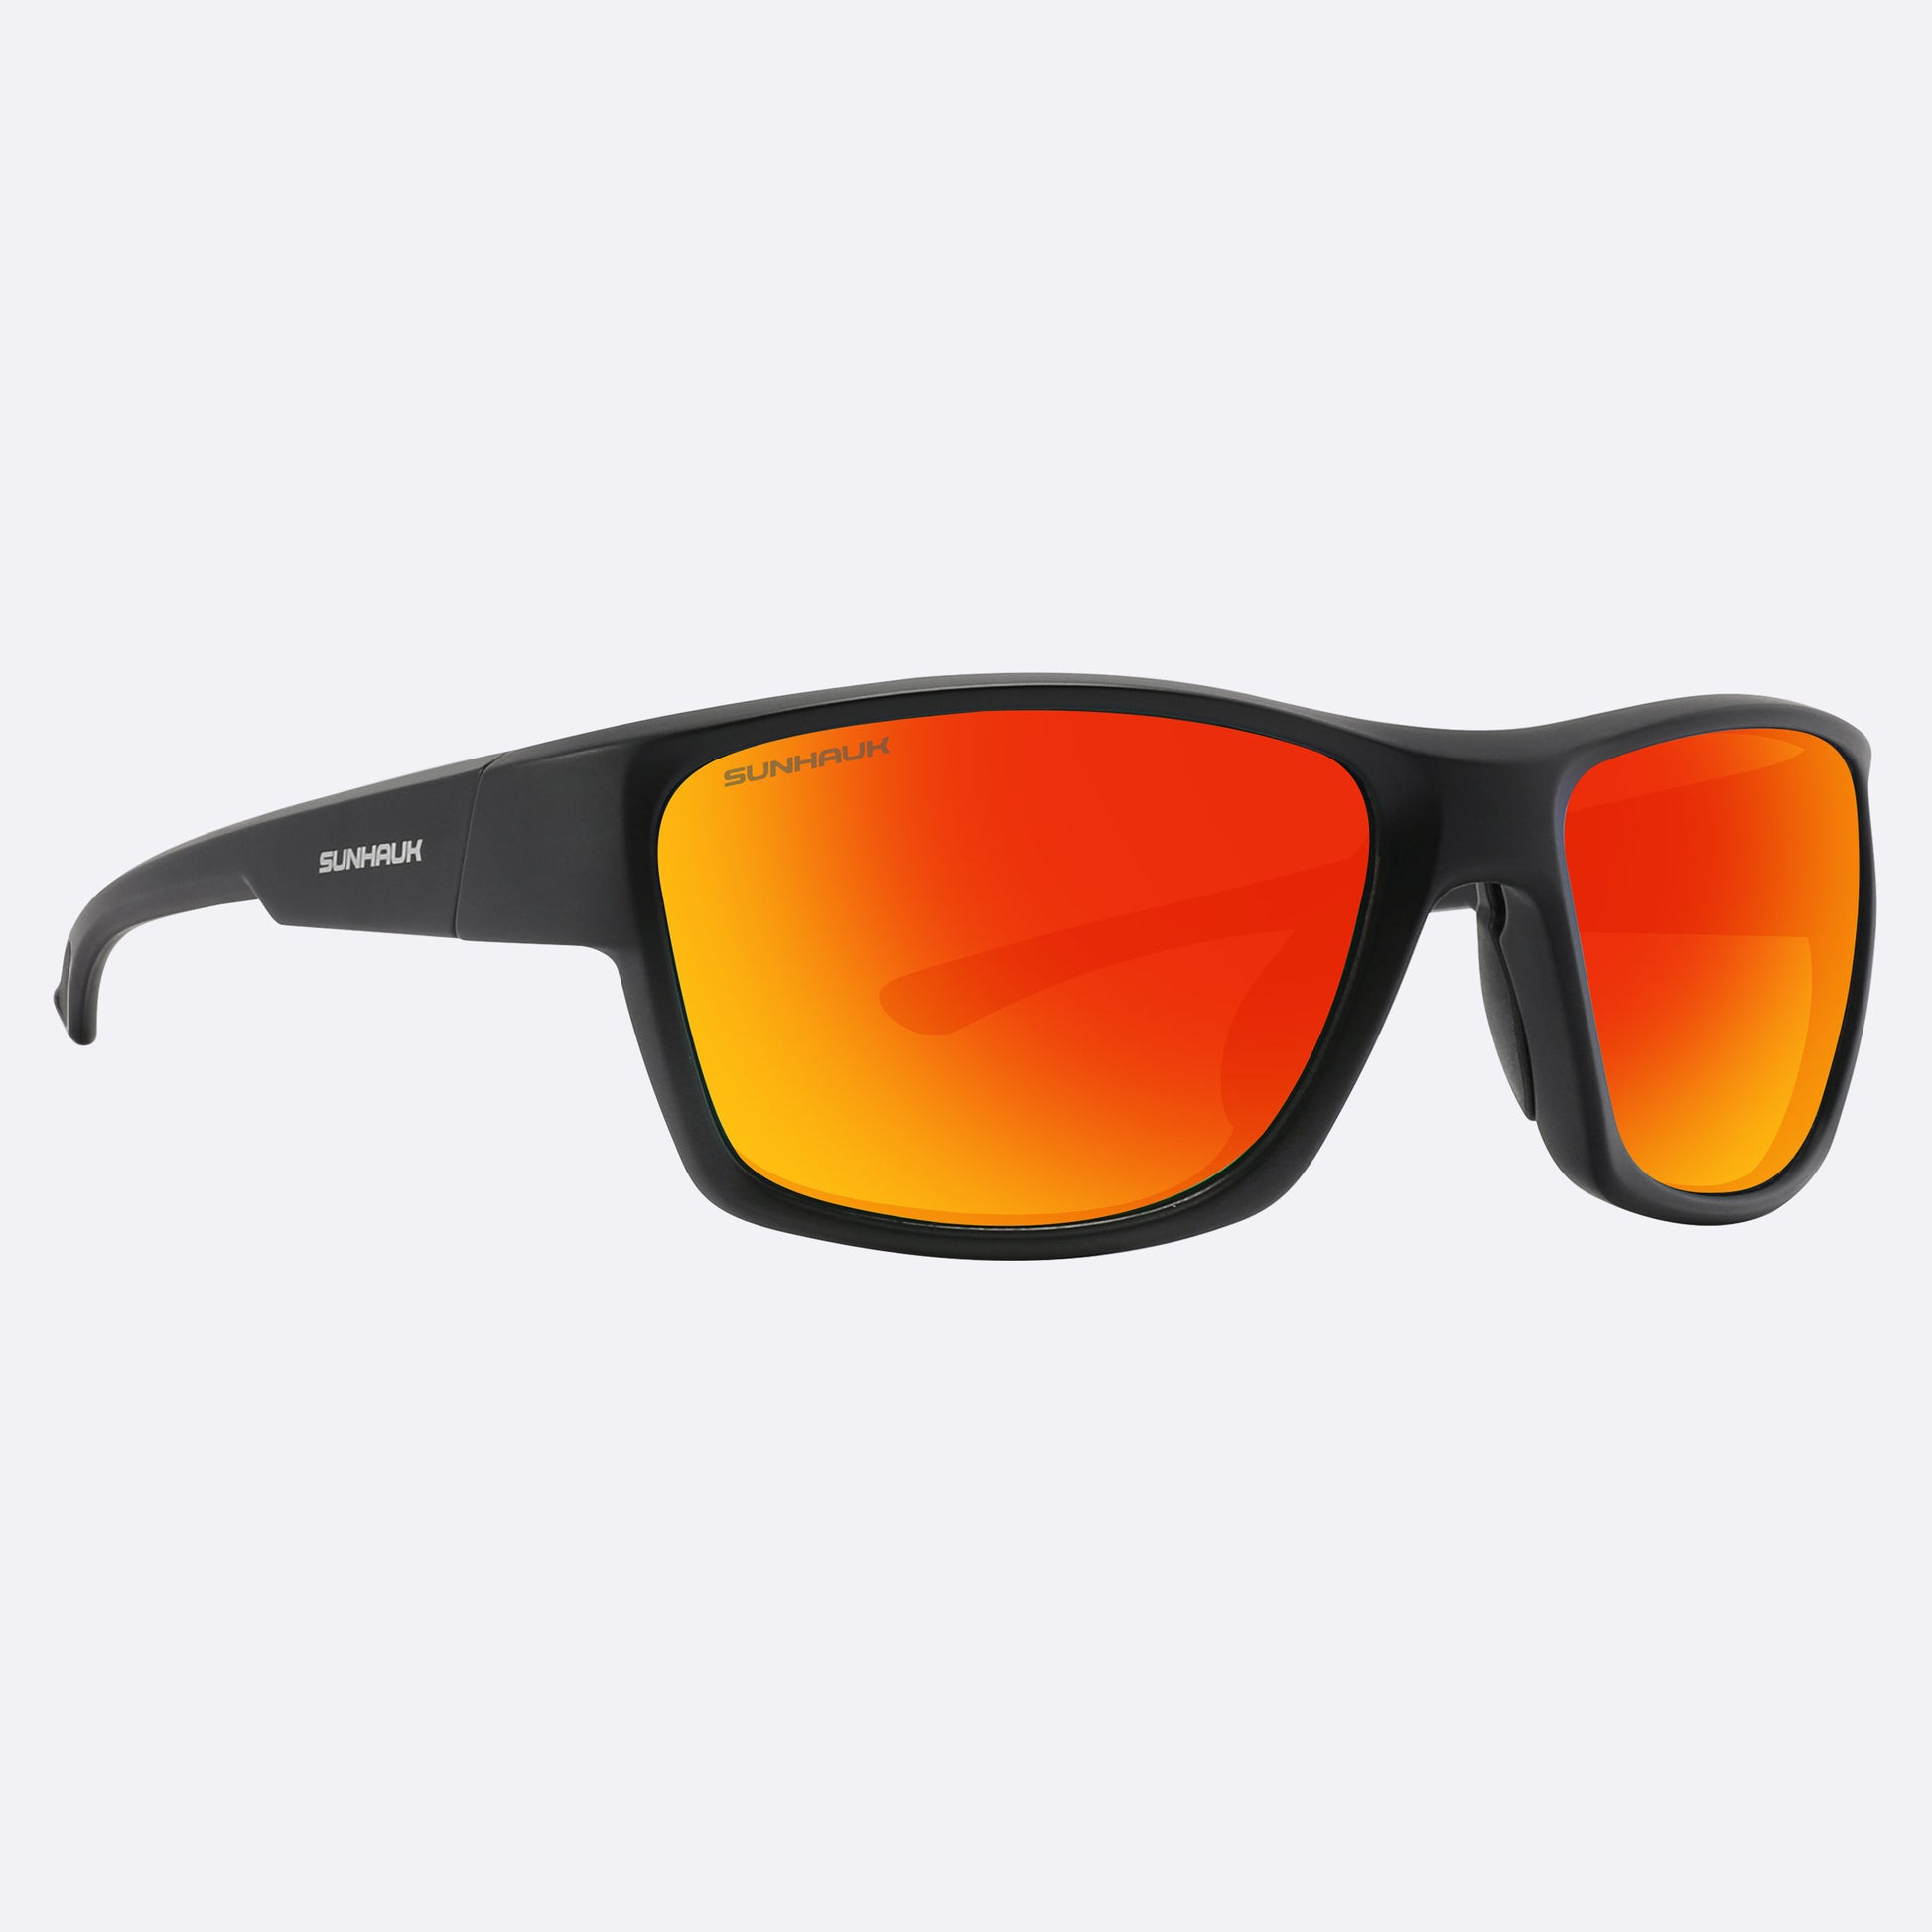 https://sunhauk.com/cdn/shop/files/crimson-sunset-Polarized-Sunglasses-6.jpg?v=1698751566&width=1946